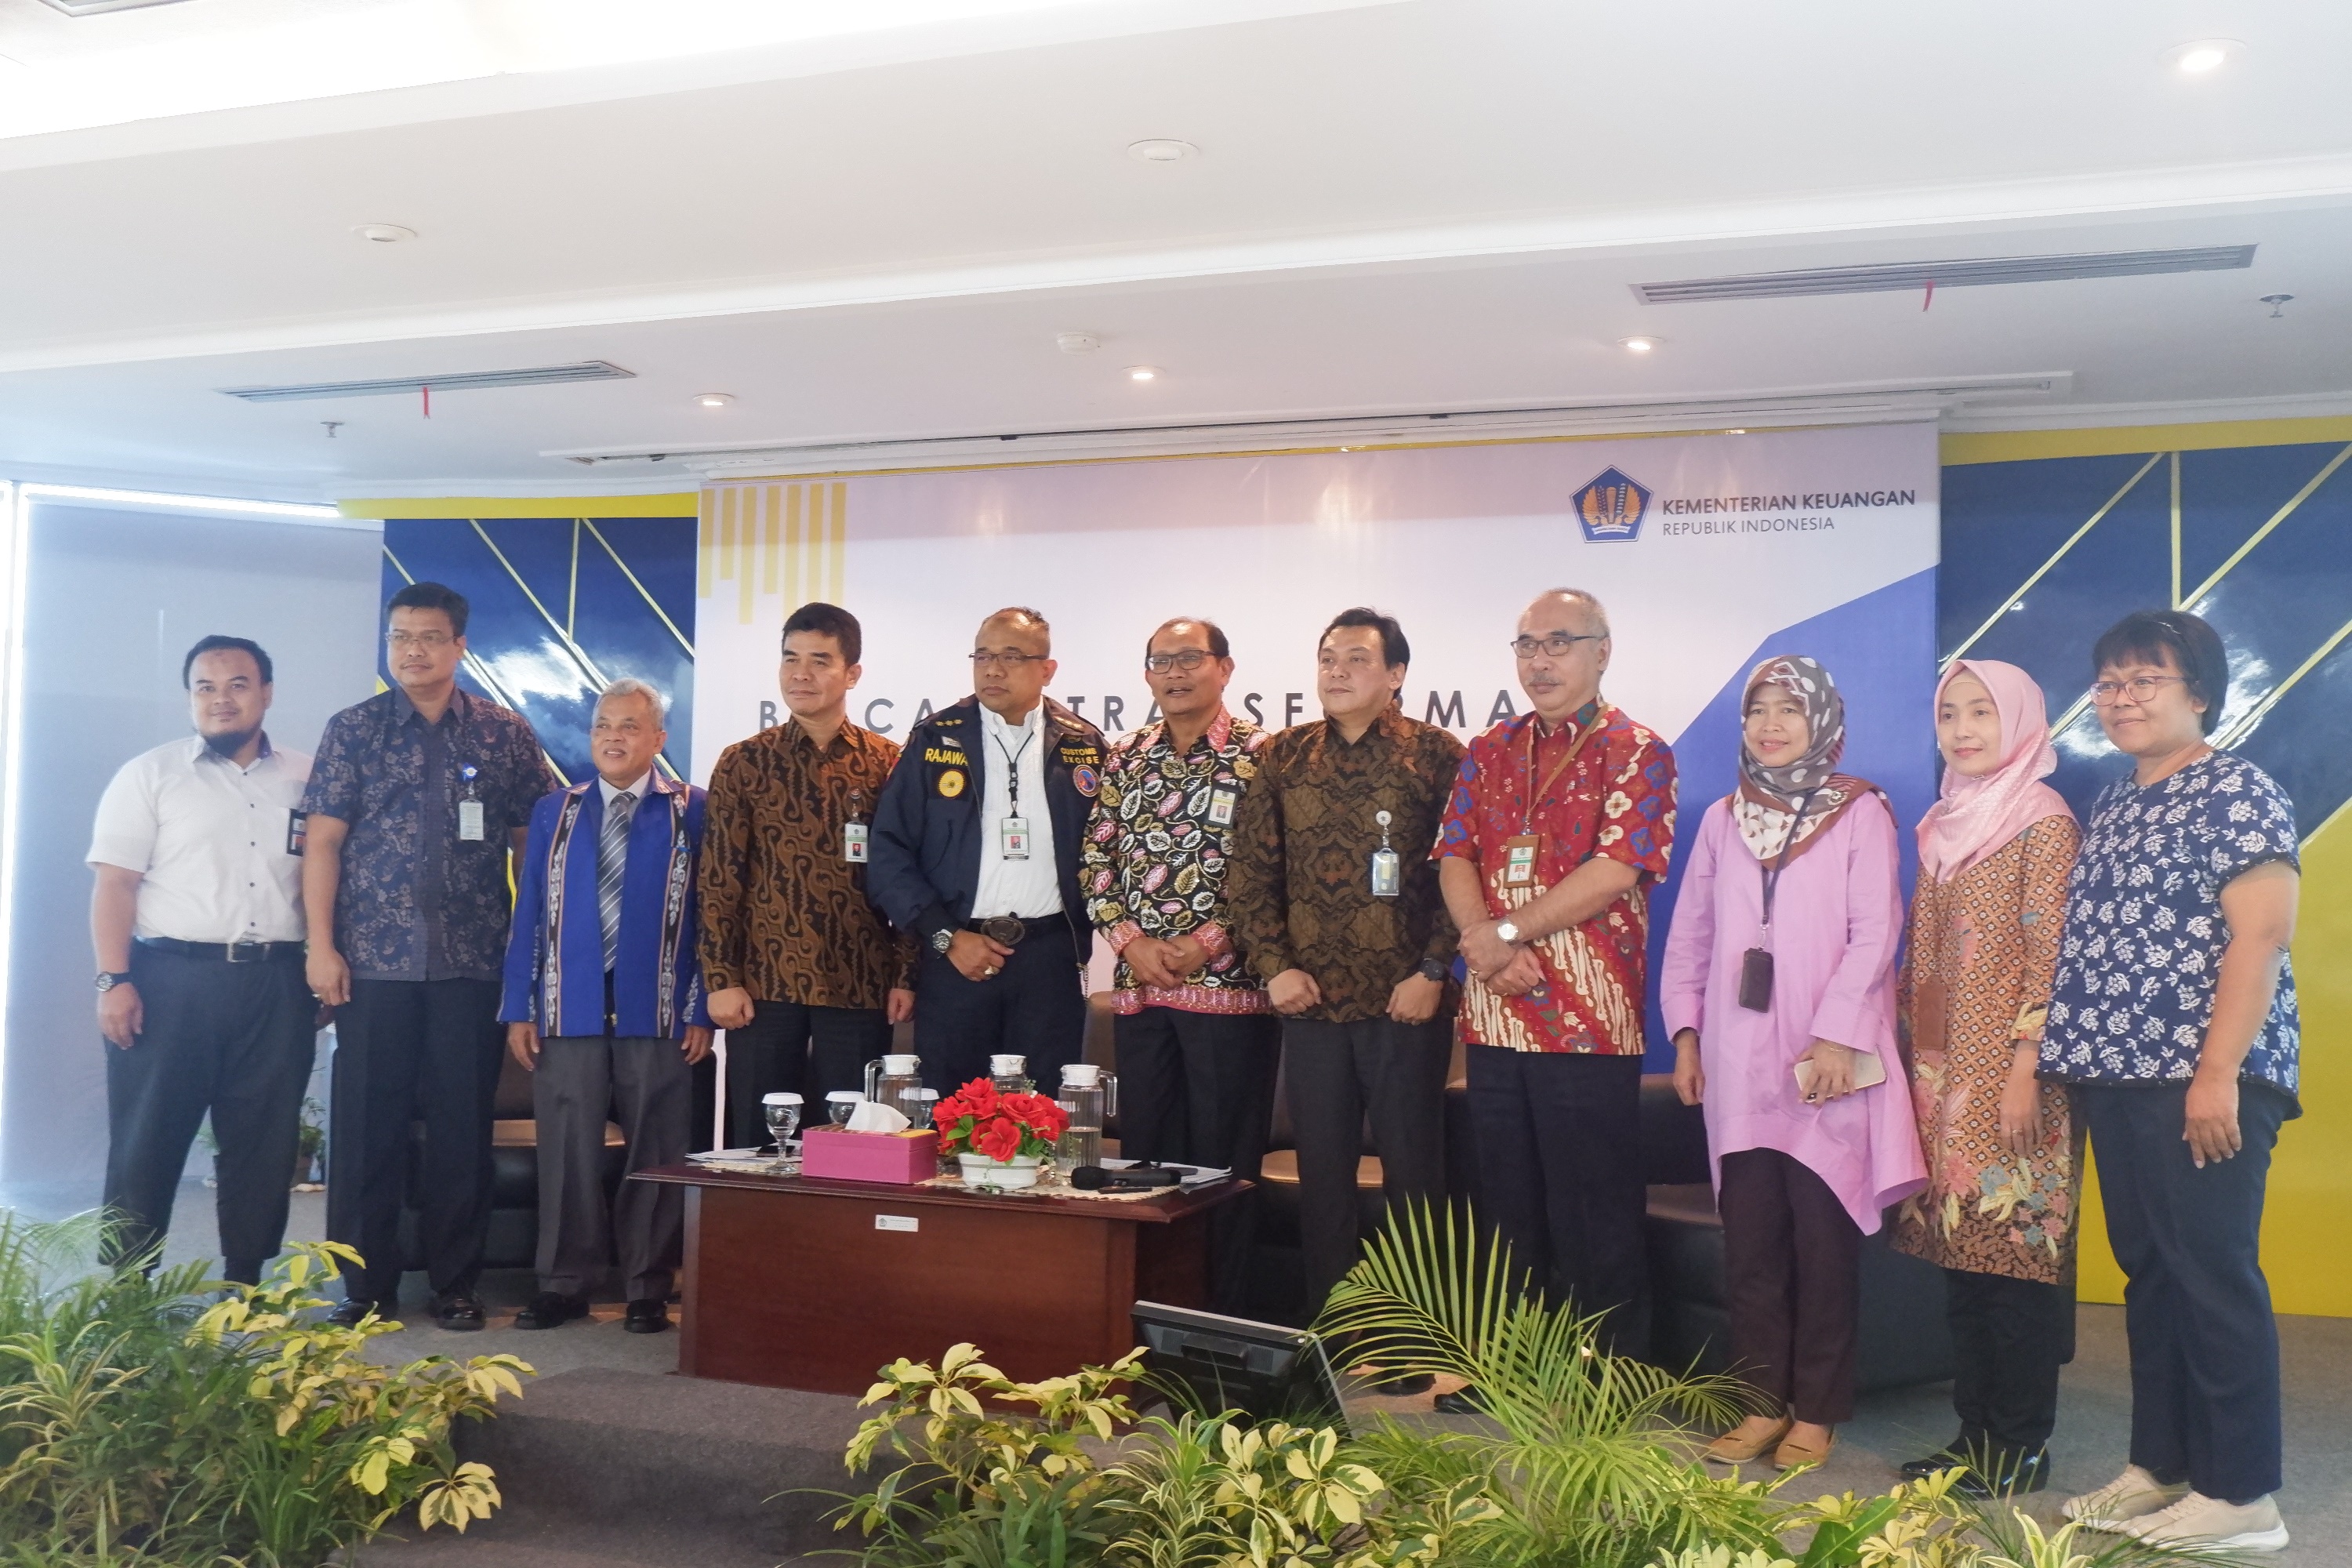 Inisiatif Program Kementerian Keuangan untuk Indonesia Maju